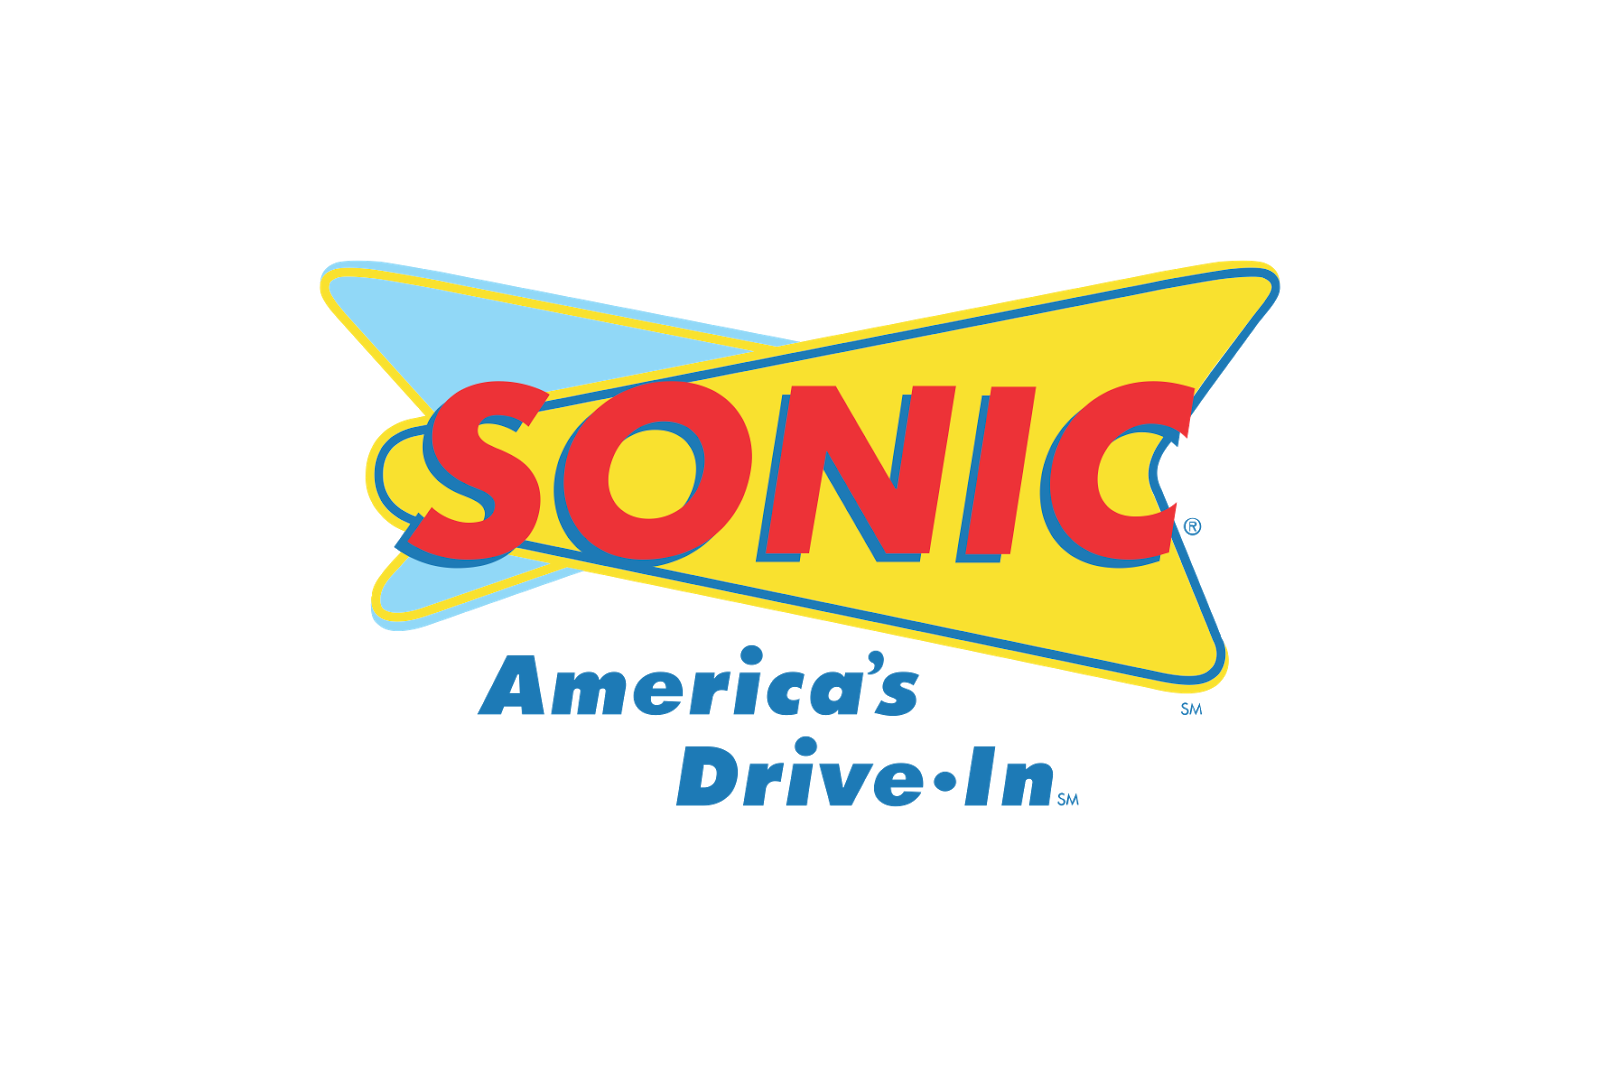 Соник драйв. Sonic Drive-in. Sonic Drive-in logo. Sonic America's Drive-in лого. Трой Смит Sonic Drive-in.